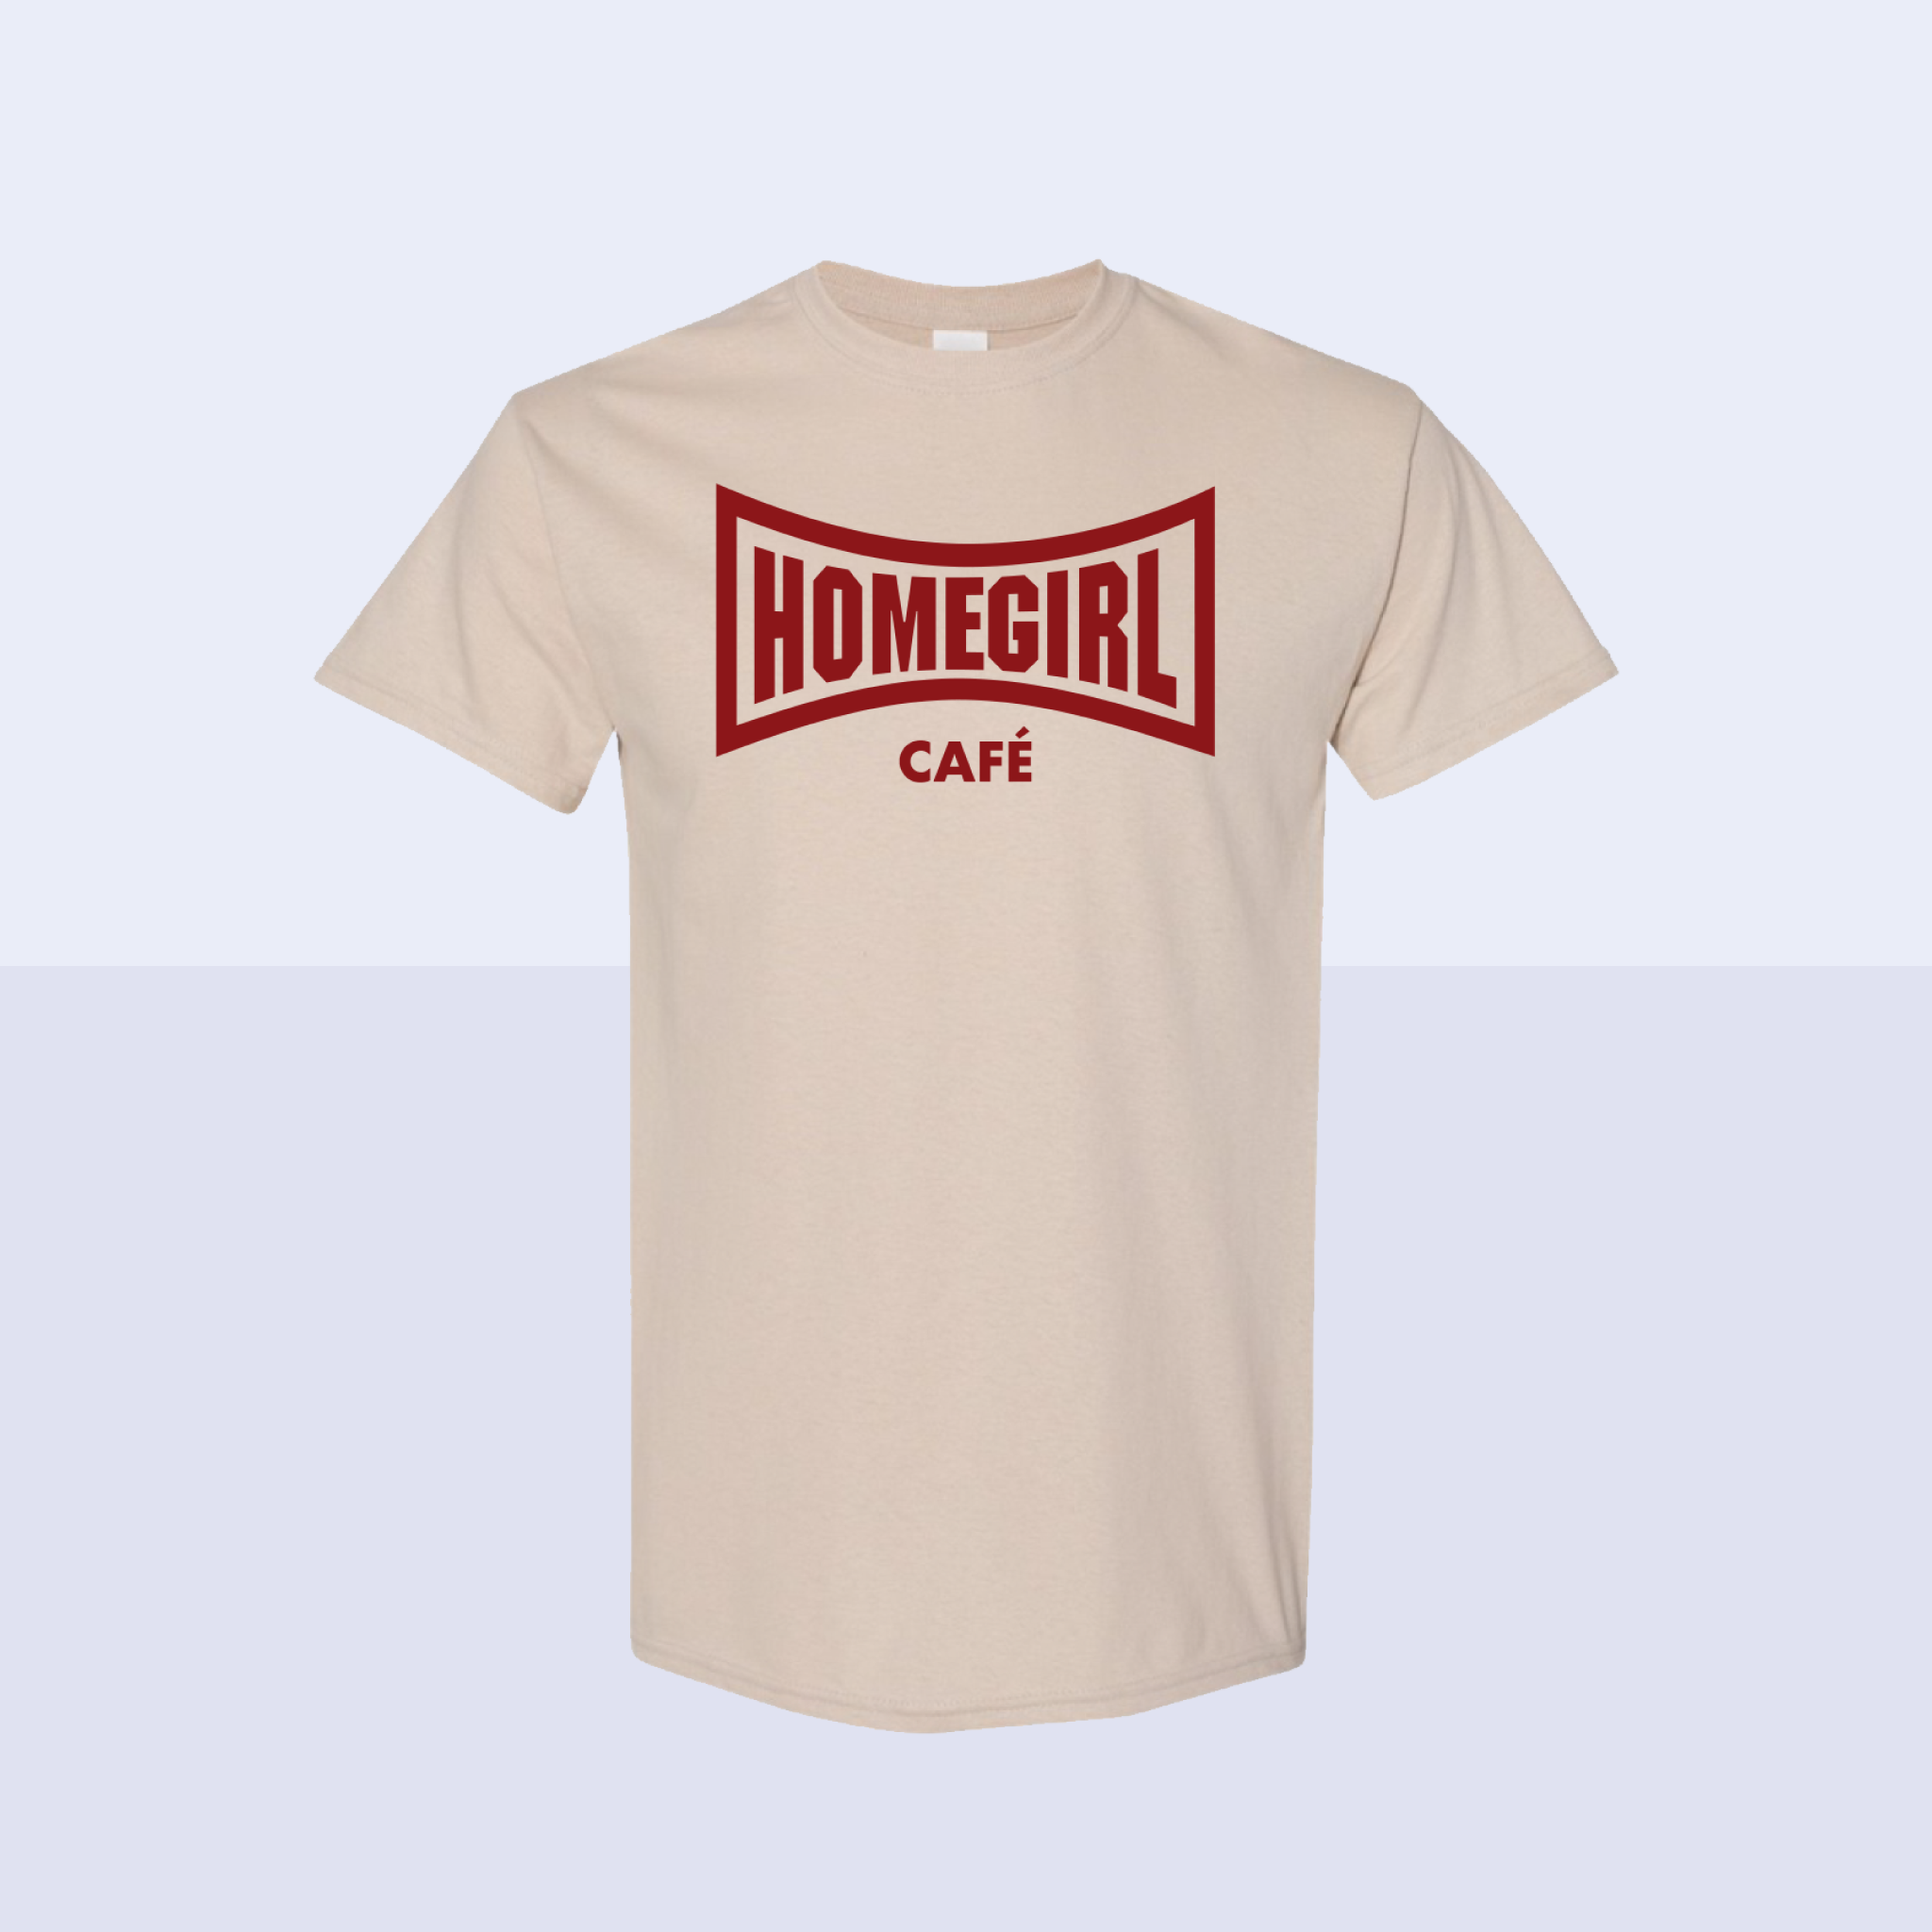 Homegirl Cafe T-Shirt